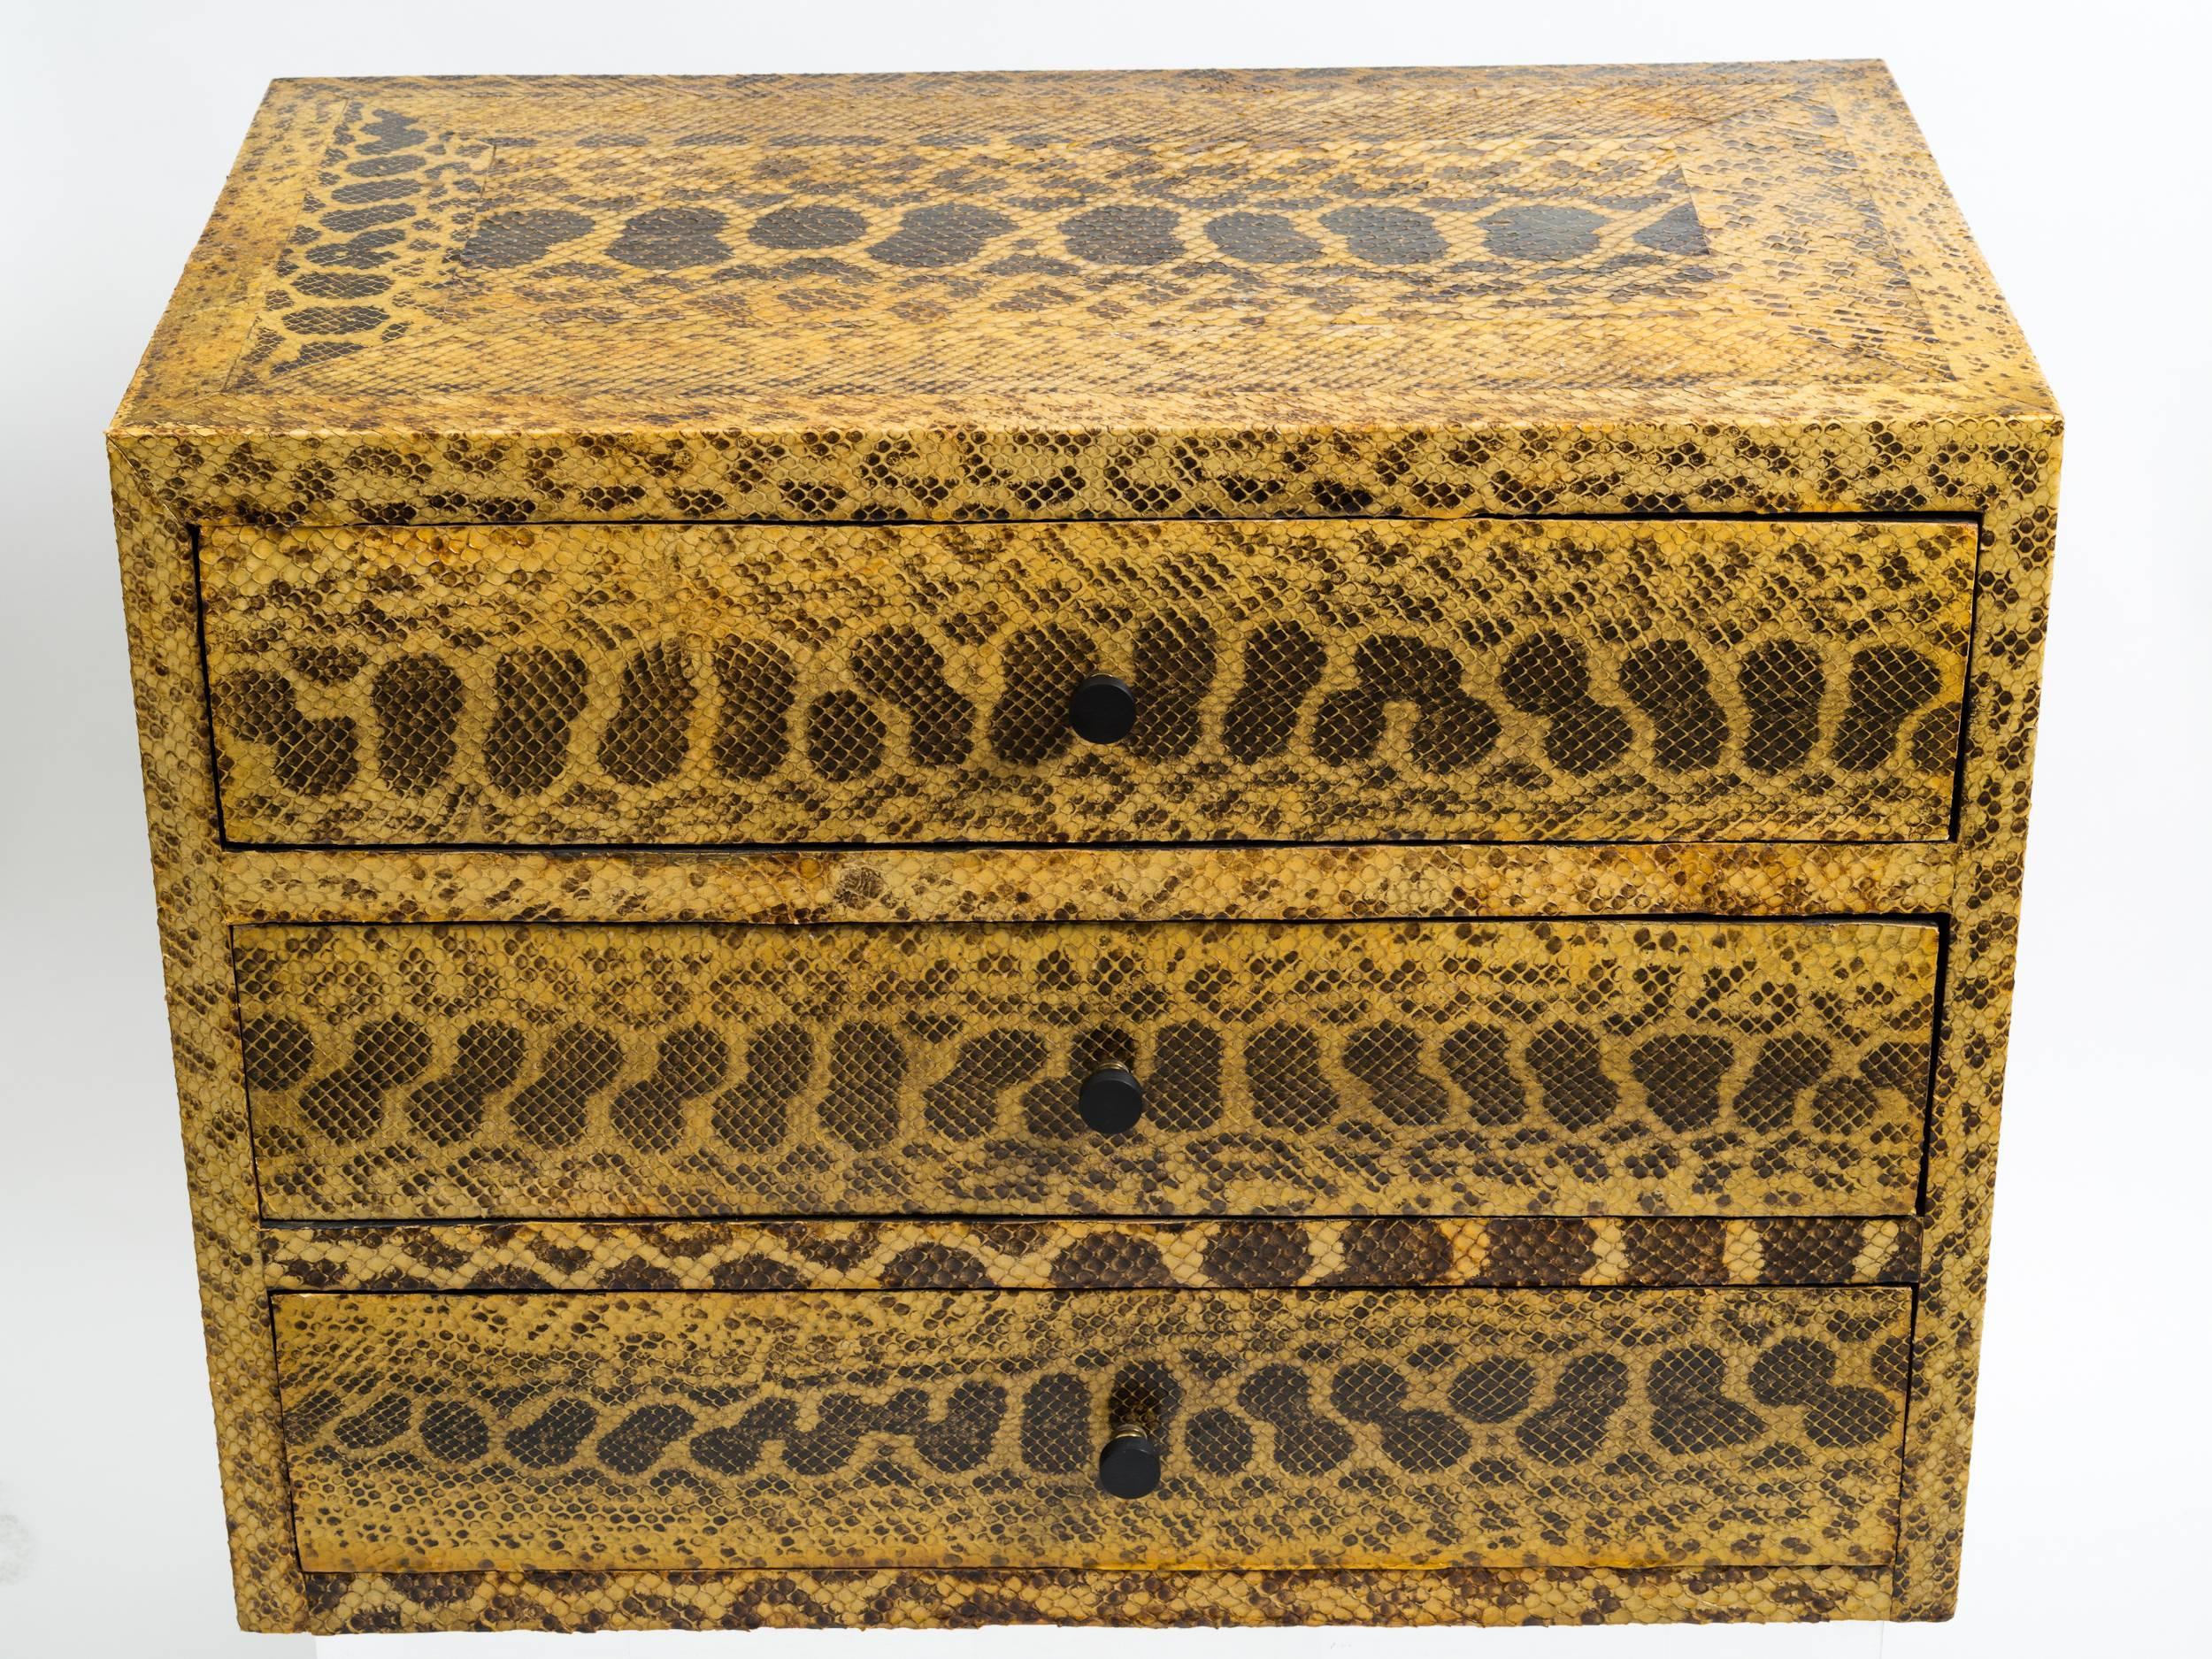 Python skin covered chest of drawers set on later silver leaf base. Provenance: Collection of Vincent Petragnani. Senior designer of Ethan Allen.